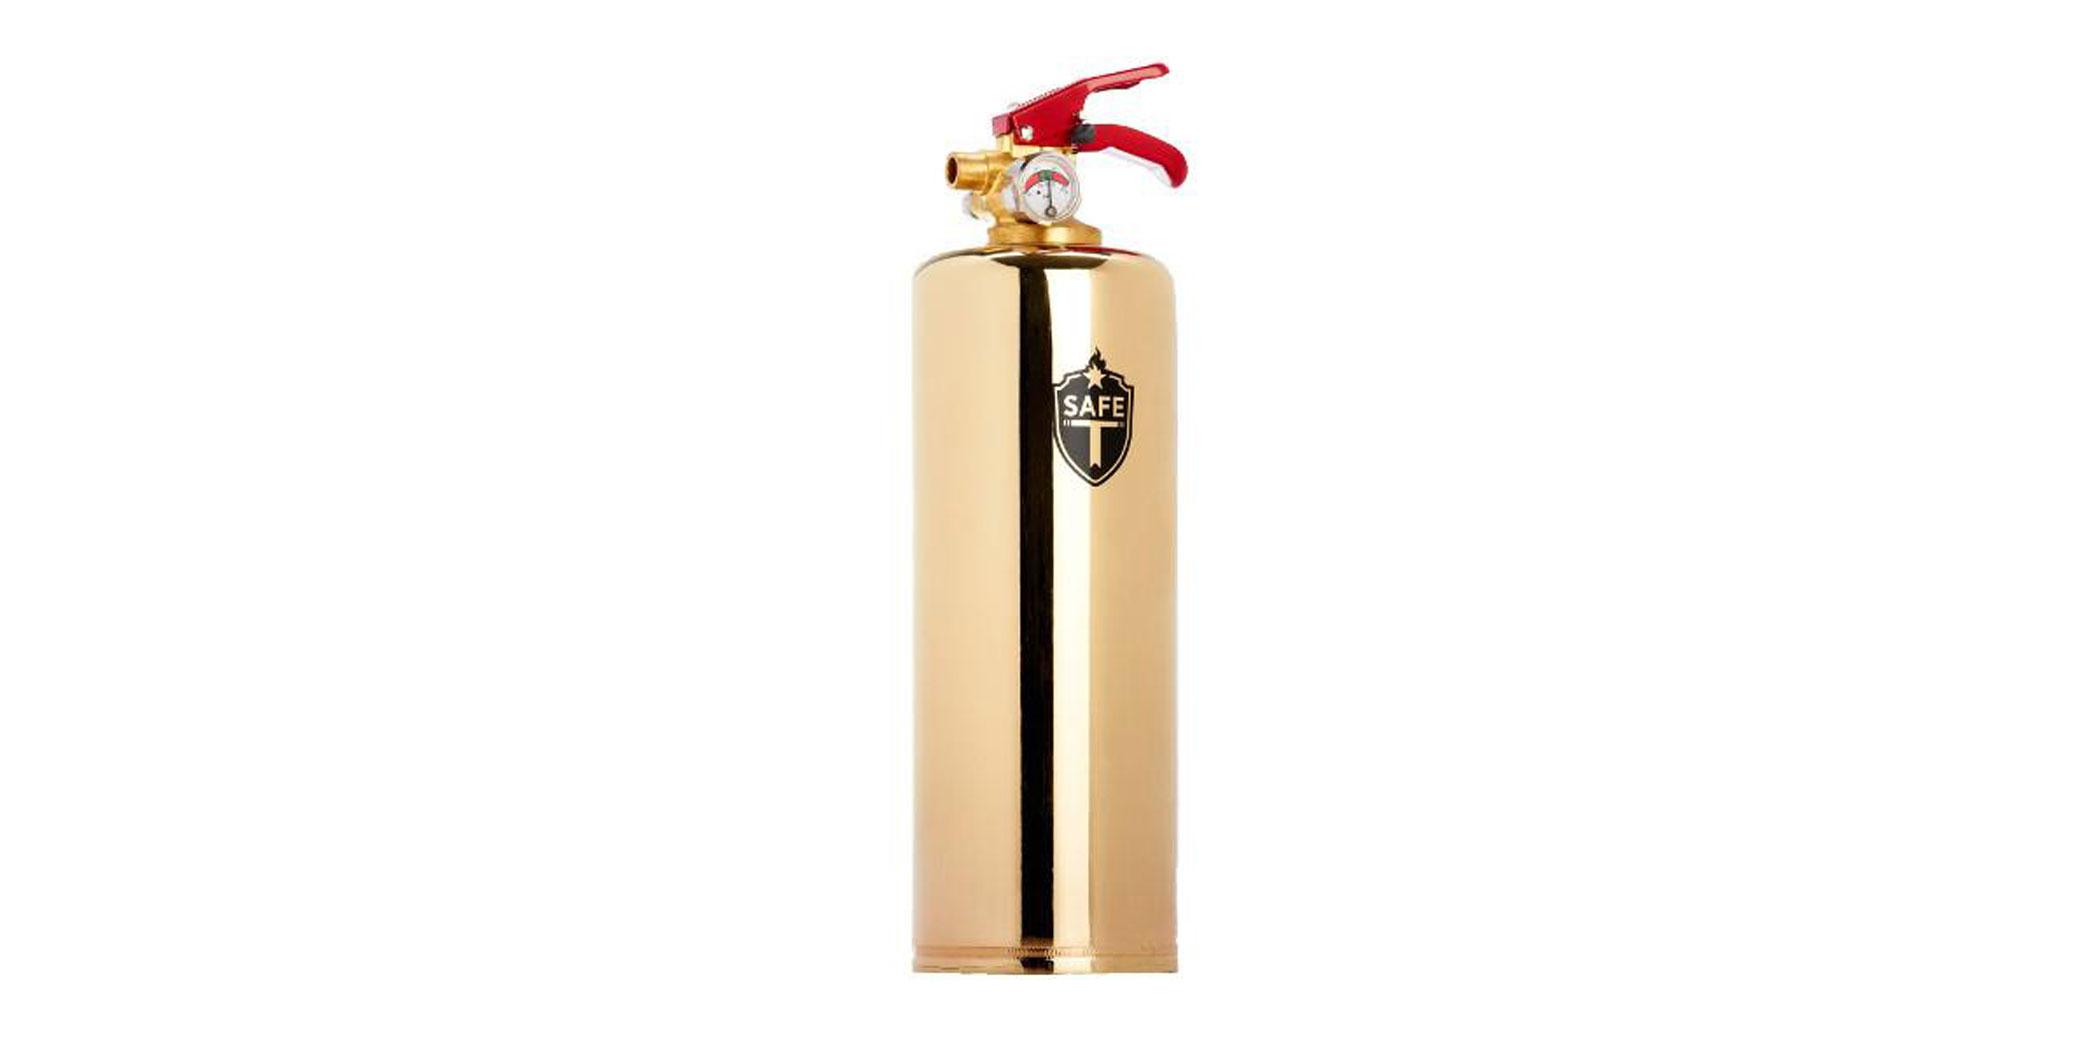 Safe-T Brass luxury fire extinguisher